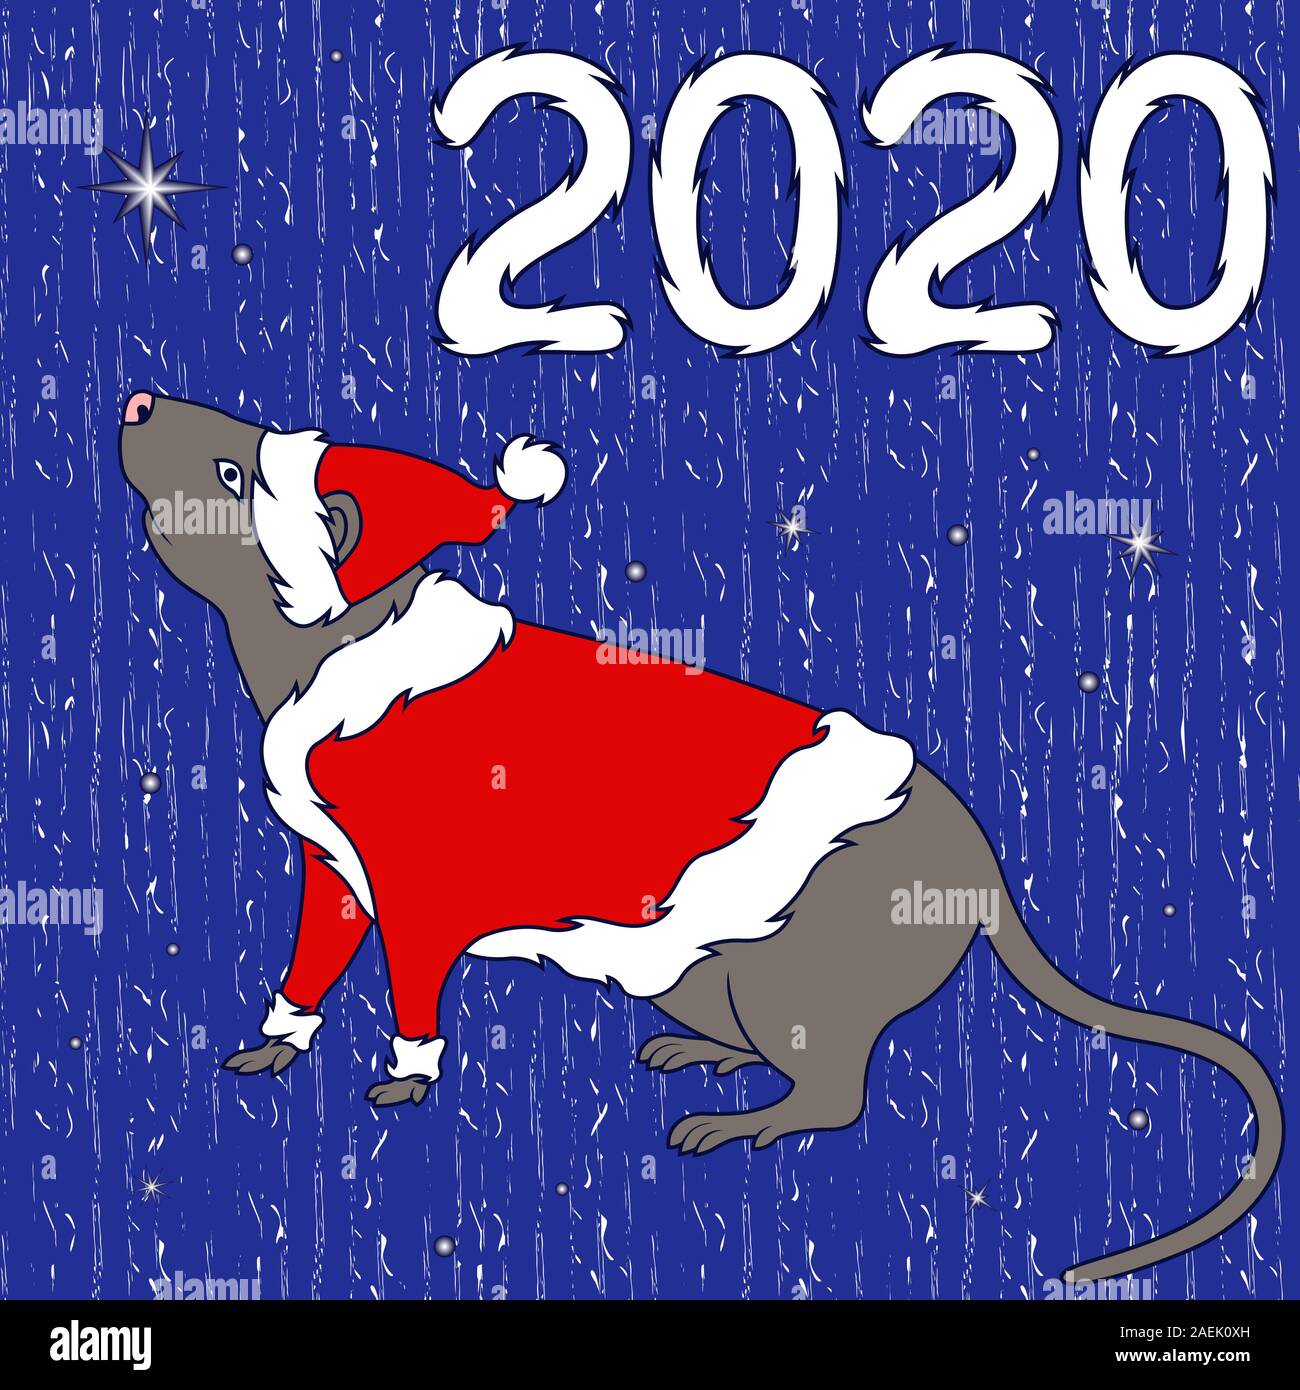 Chinesisches Zeichen Ratte in Santa Kostüm, Symbol für das Neue Jahr auf dem Östlichen Kalender, handgezeichnete Abbildung auf dem gedeckten Blau Muster, Hintergrund uns werden können Stock Vektor